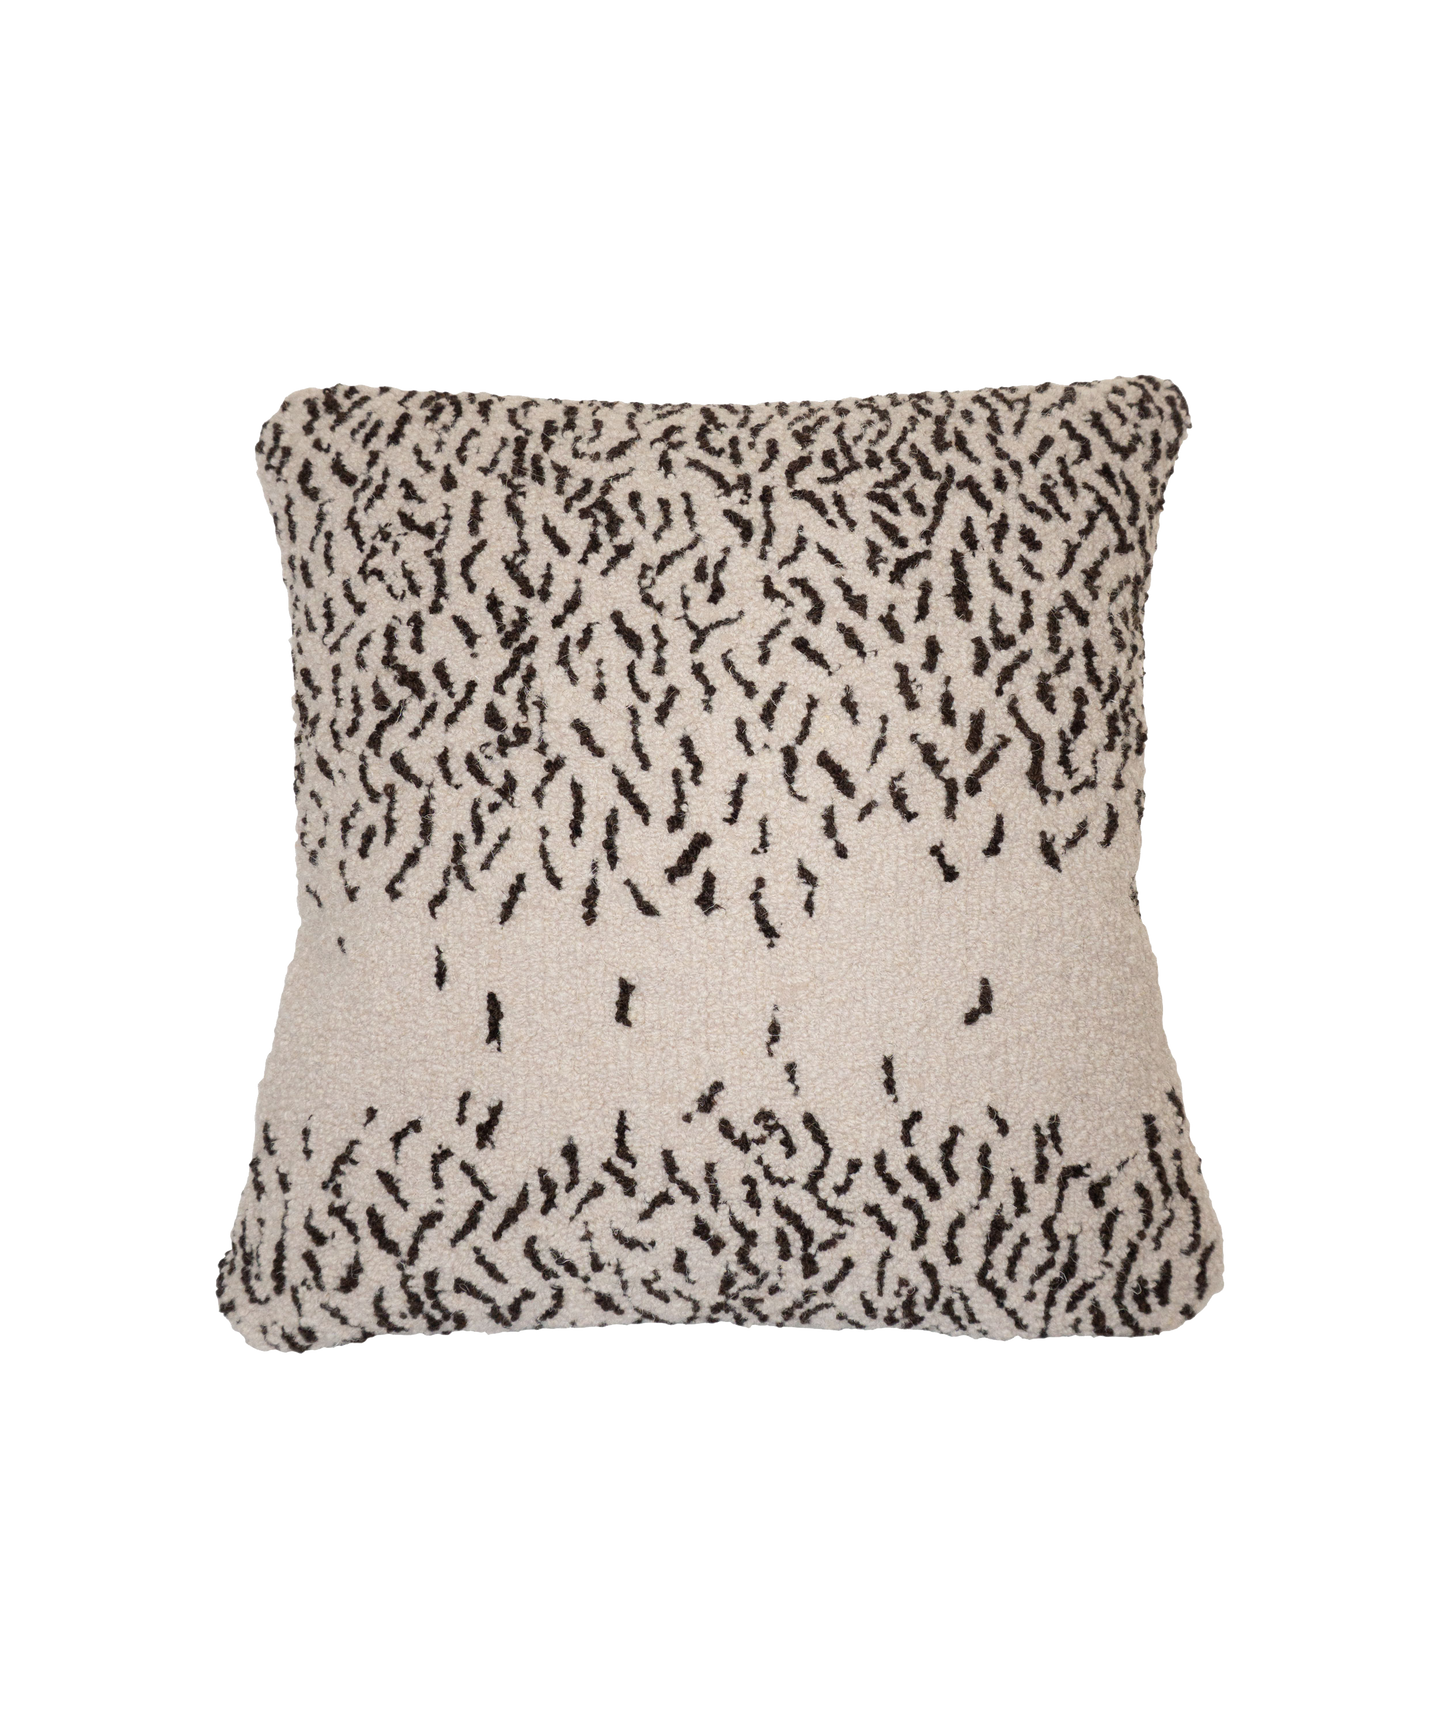 'Ants' Carpet Cushion